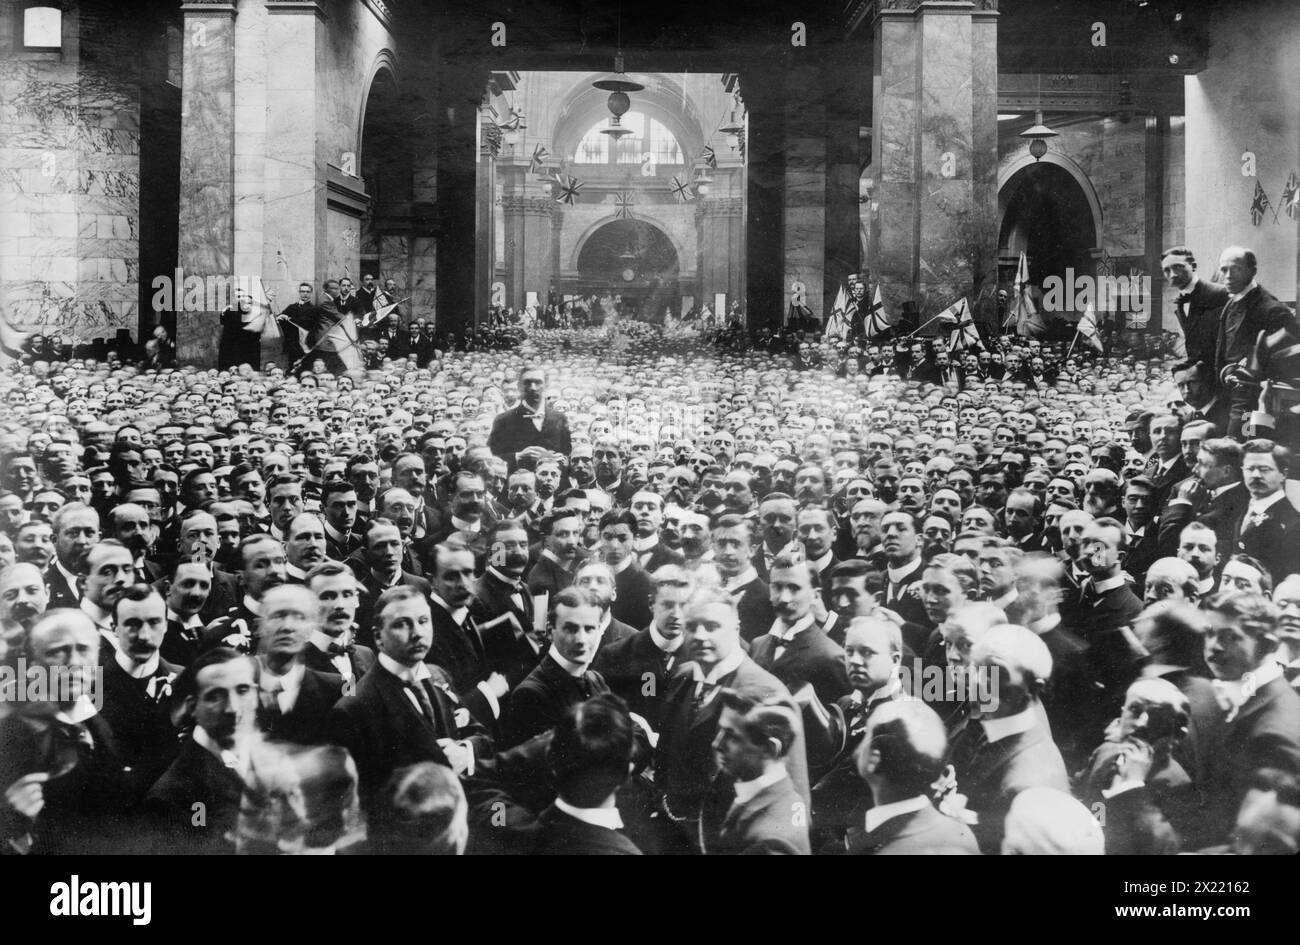 Crowd on stock exchange floor, London, between 1910-1920. Stock Photo